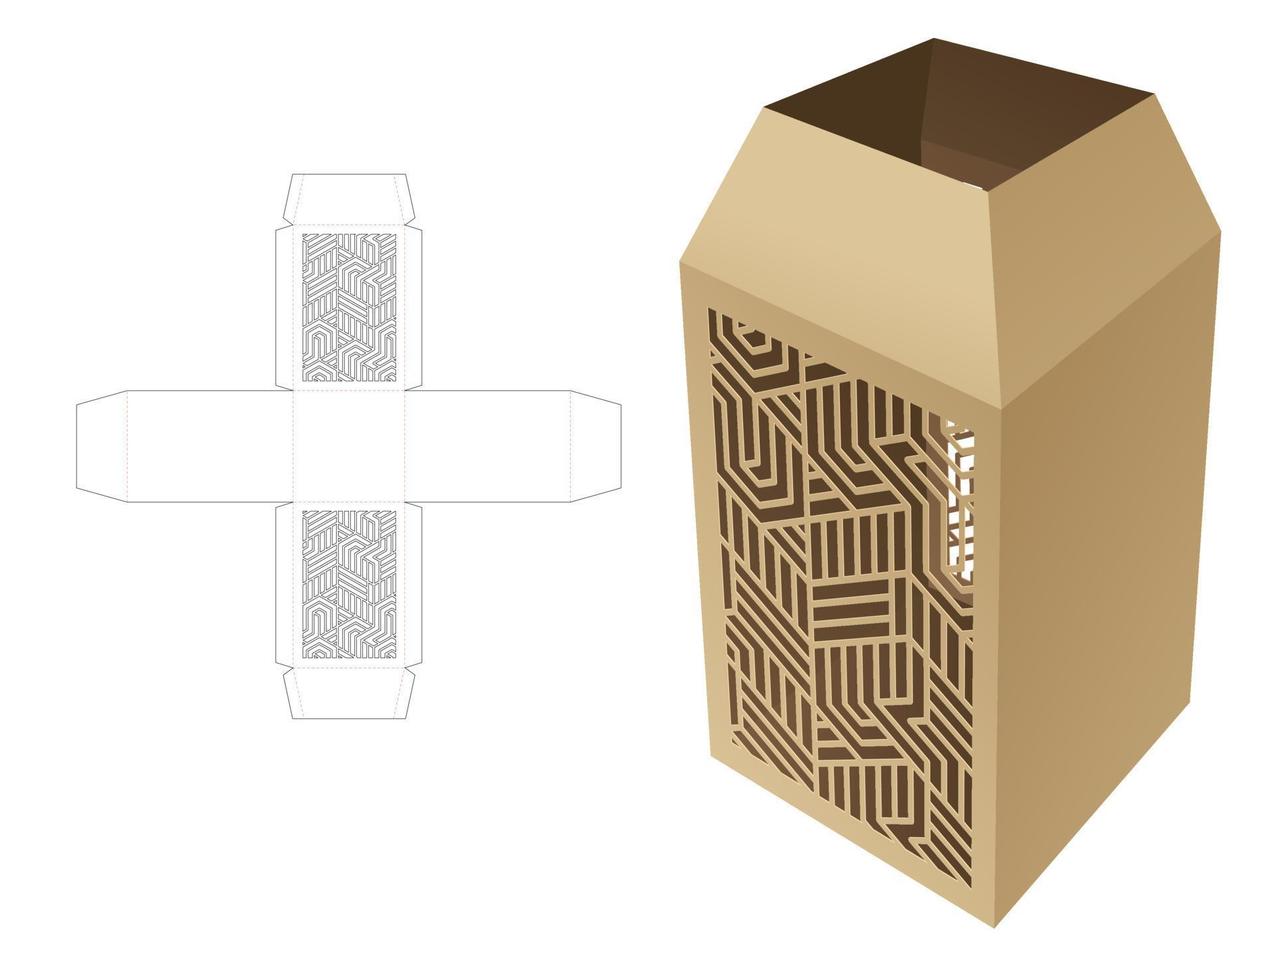 Karton-Obelisk-Top-Briefpapierbox mit Schablonenmuster-Stanzschablone und 3D-Modell vektor